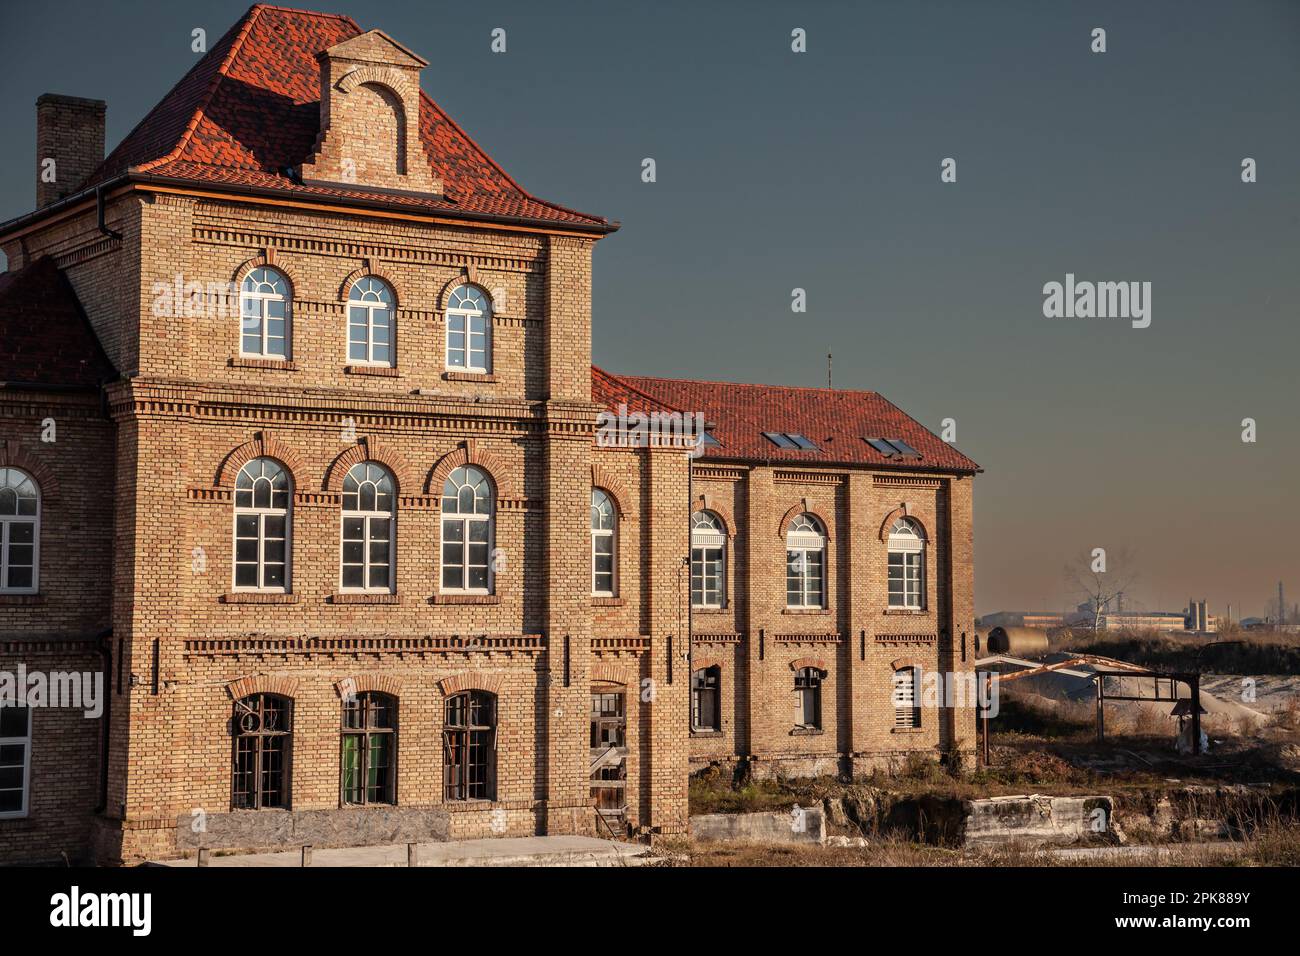 Immagine di un vecchio maniero, un palazzo del 19th ° secolo, recentemente ristrutturato, a pancevo, vojvodina, serbia, al tramonto, con una facciata in mattoni. Foto Stock